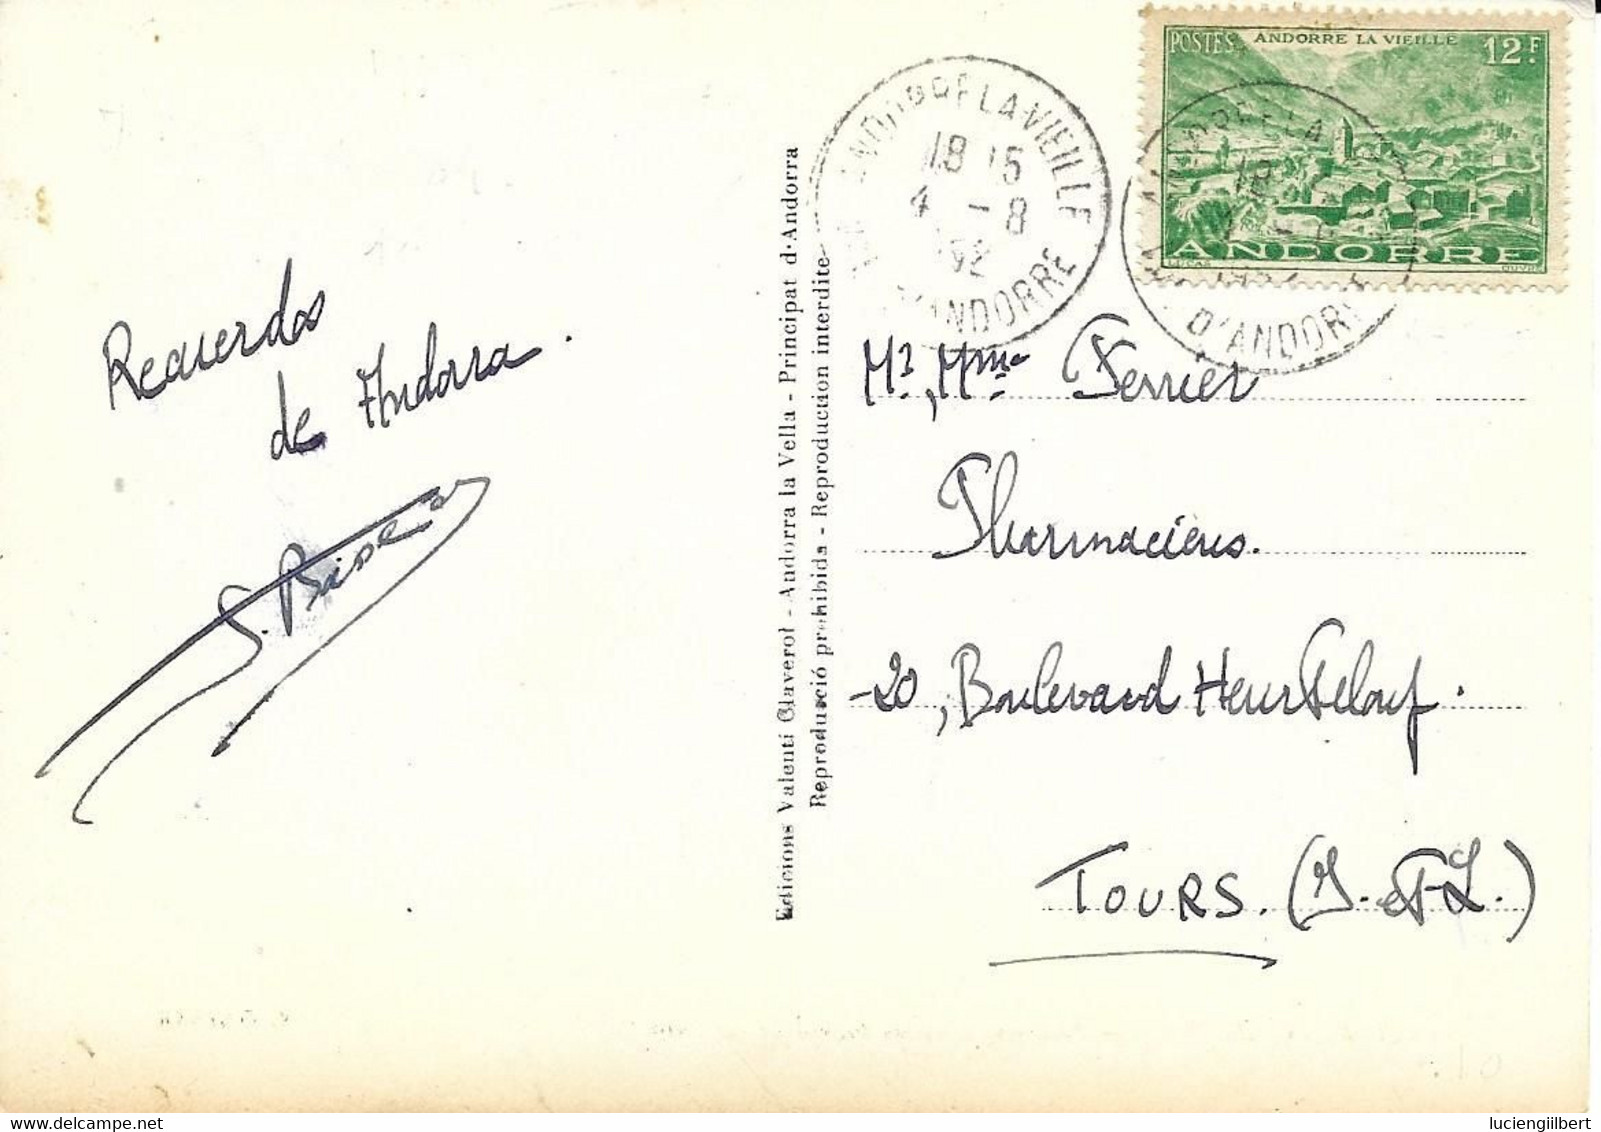 ANDORRE -    TIMBRES  N° 130 -  MAISON DES VALLEES  -  TARIF CP 6 01 49  -  1952 - CACHET MANUEL ANDORRE LA VIEILLE - Brieven En Documenten